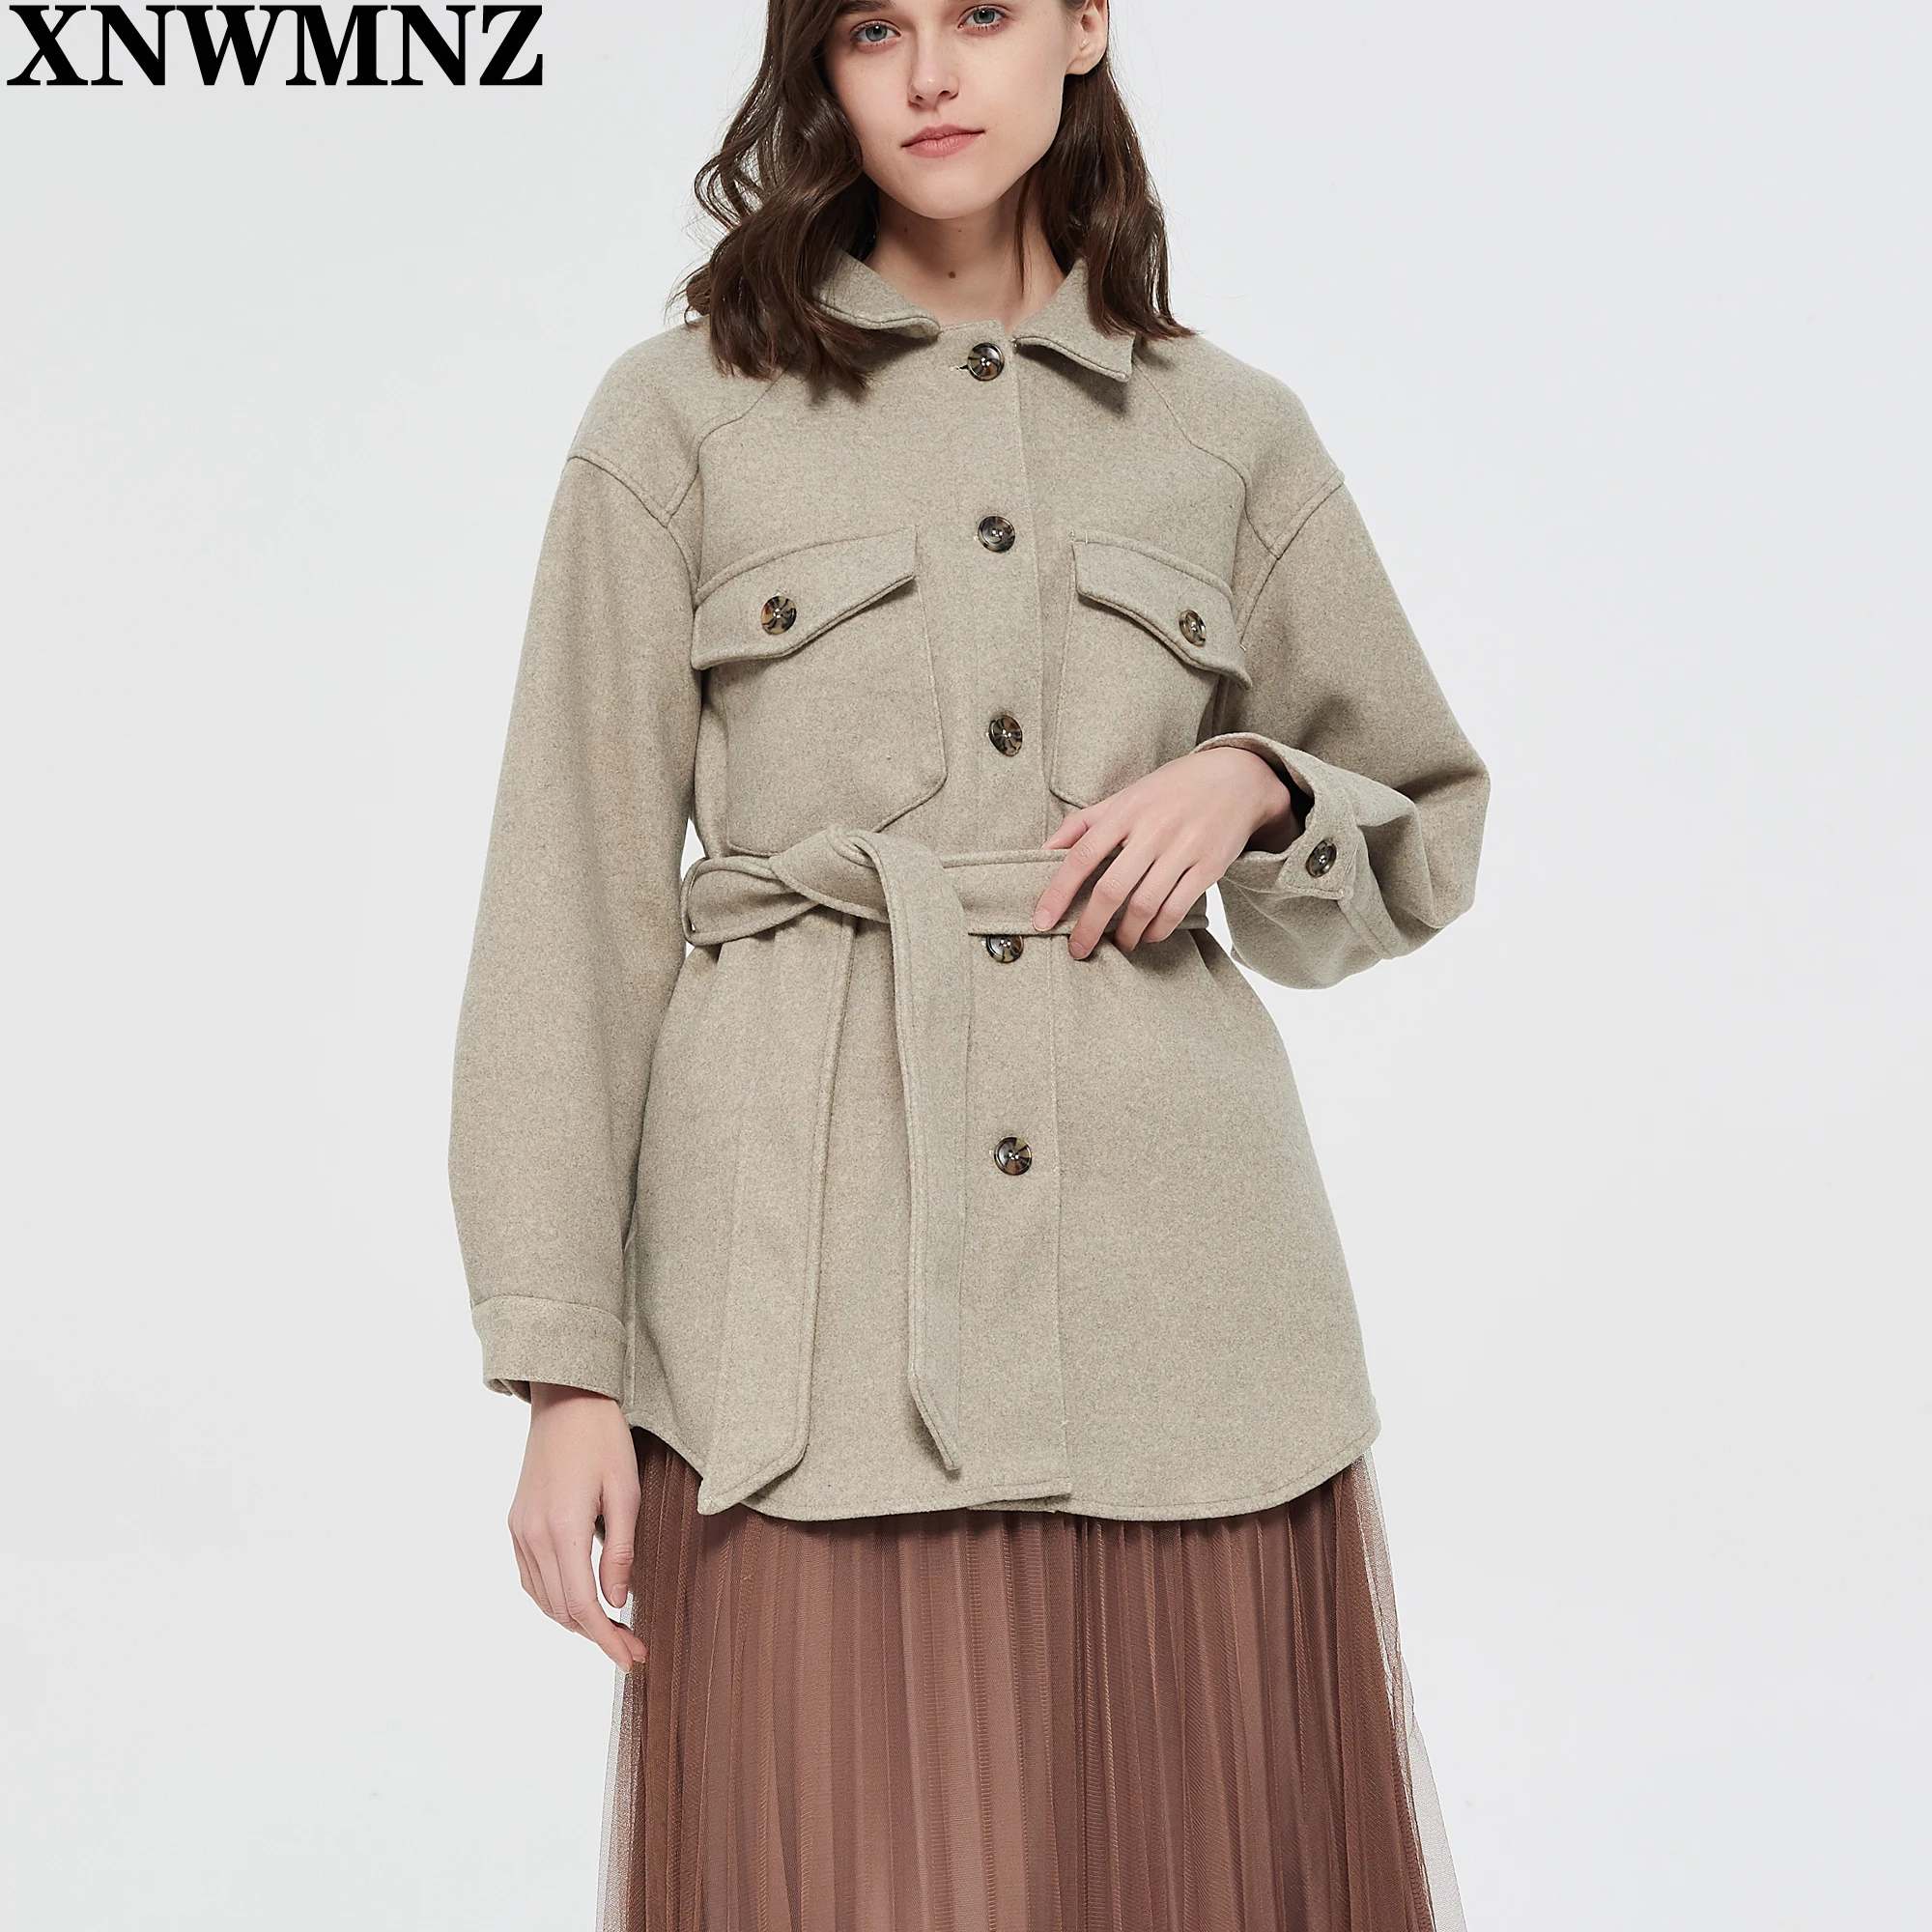 XNWMNZ Women 2021 Fashion With Belt Loose Woolen Jacket Coat Vintage Long Sleeve Side Pockets Female Outerwear Chic Overcoat